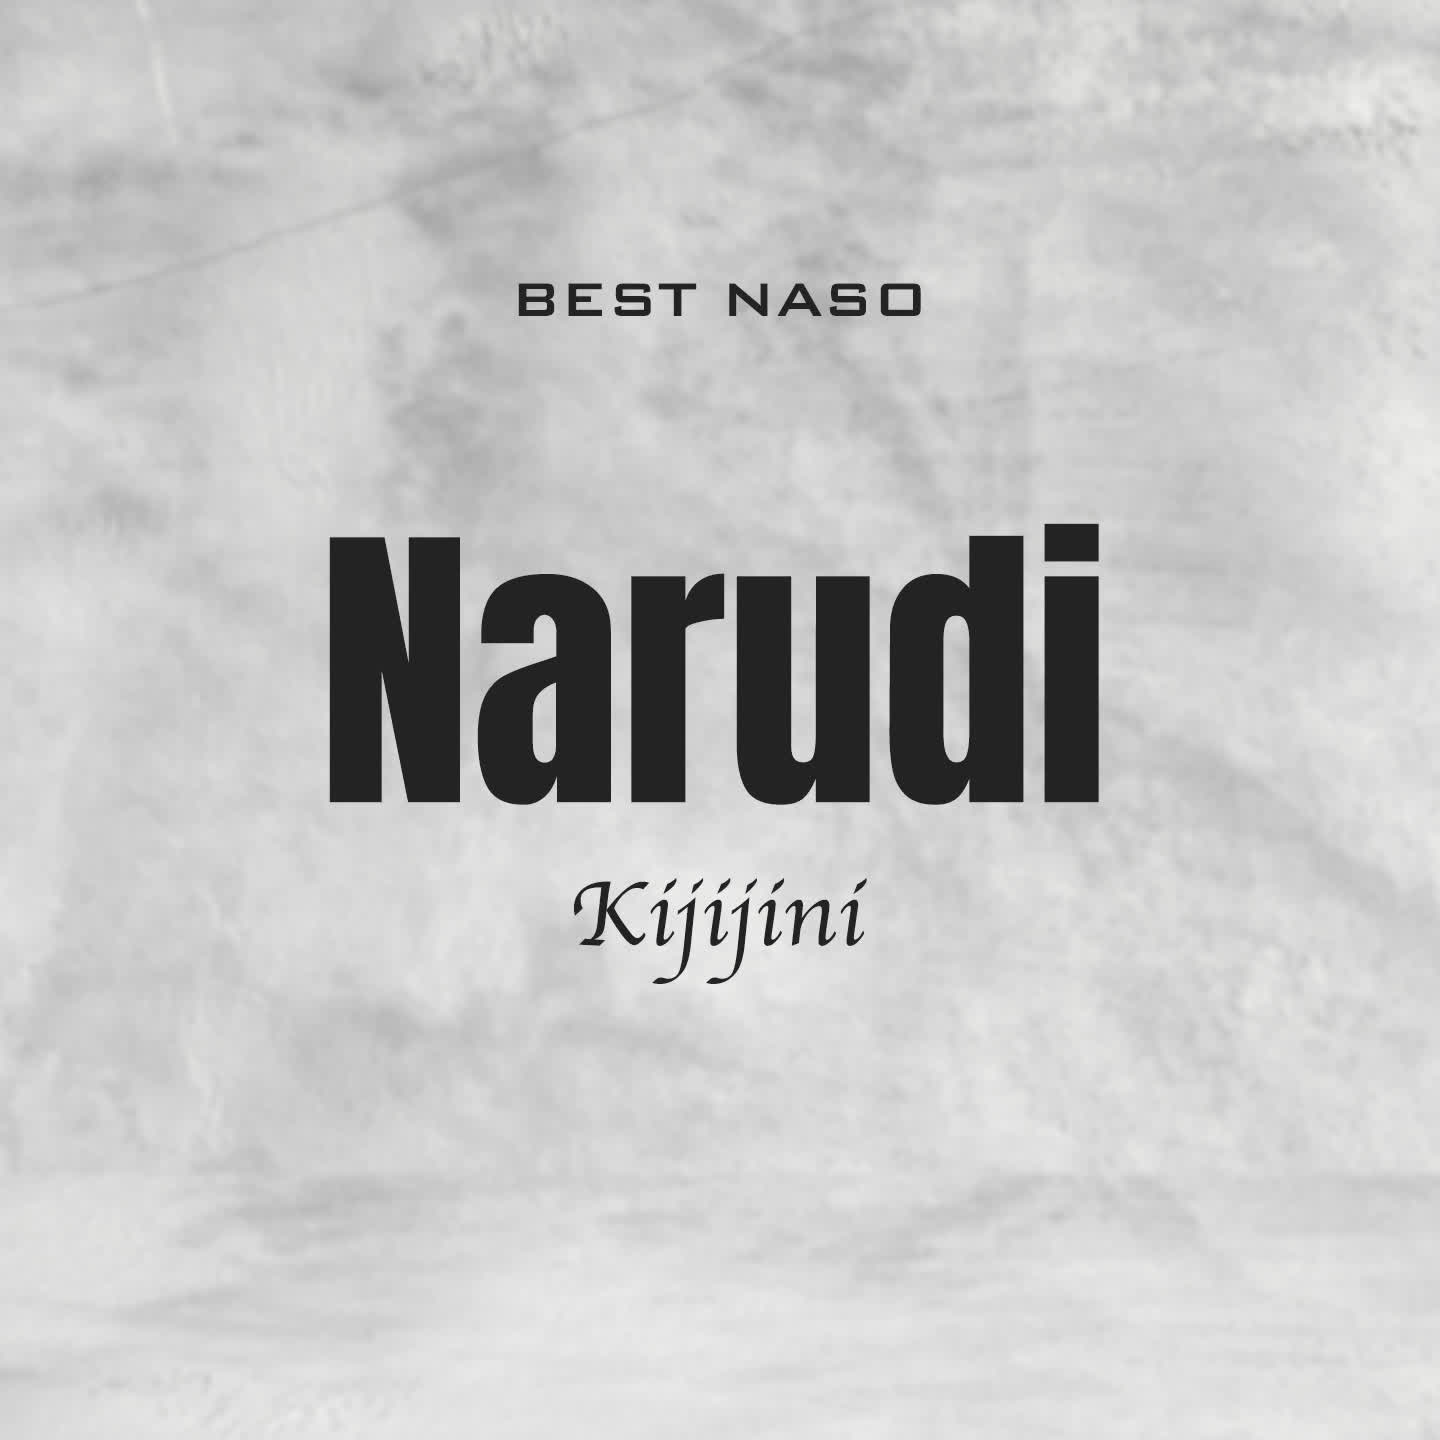 Download Audio Mp3 | Best Naso – Narudi Kijijini